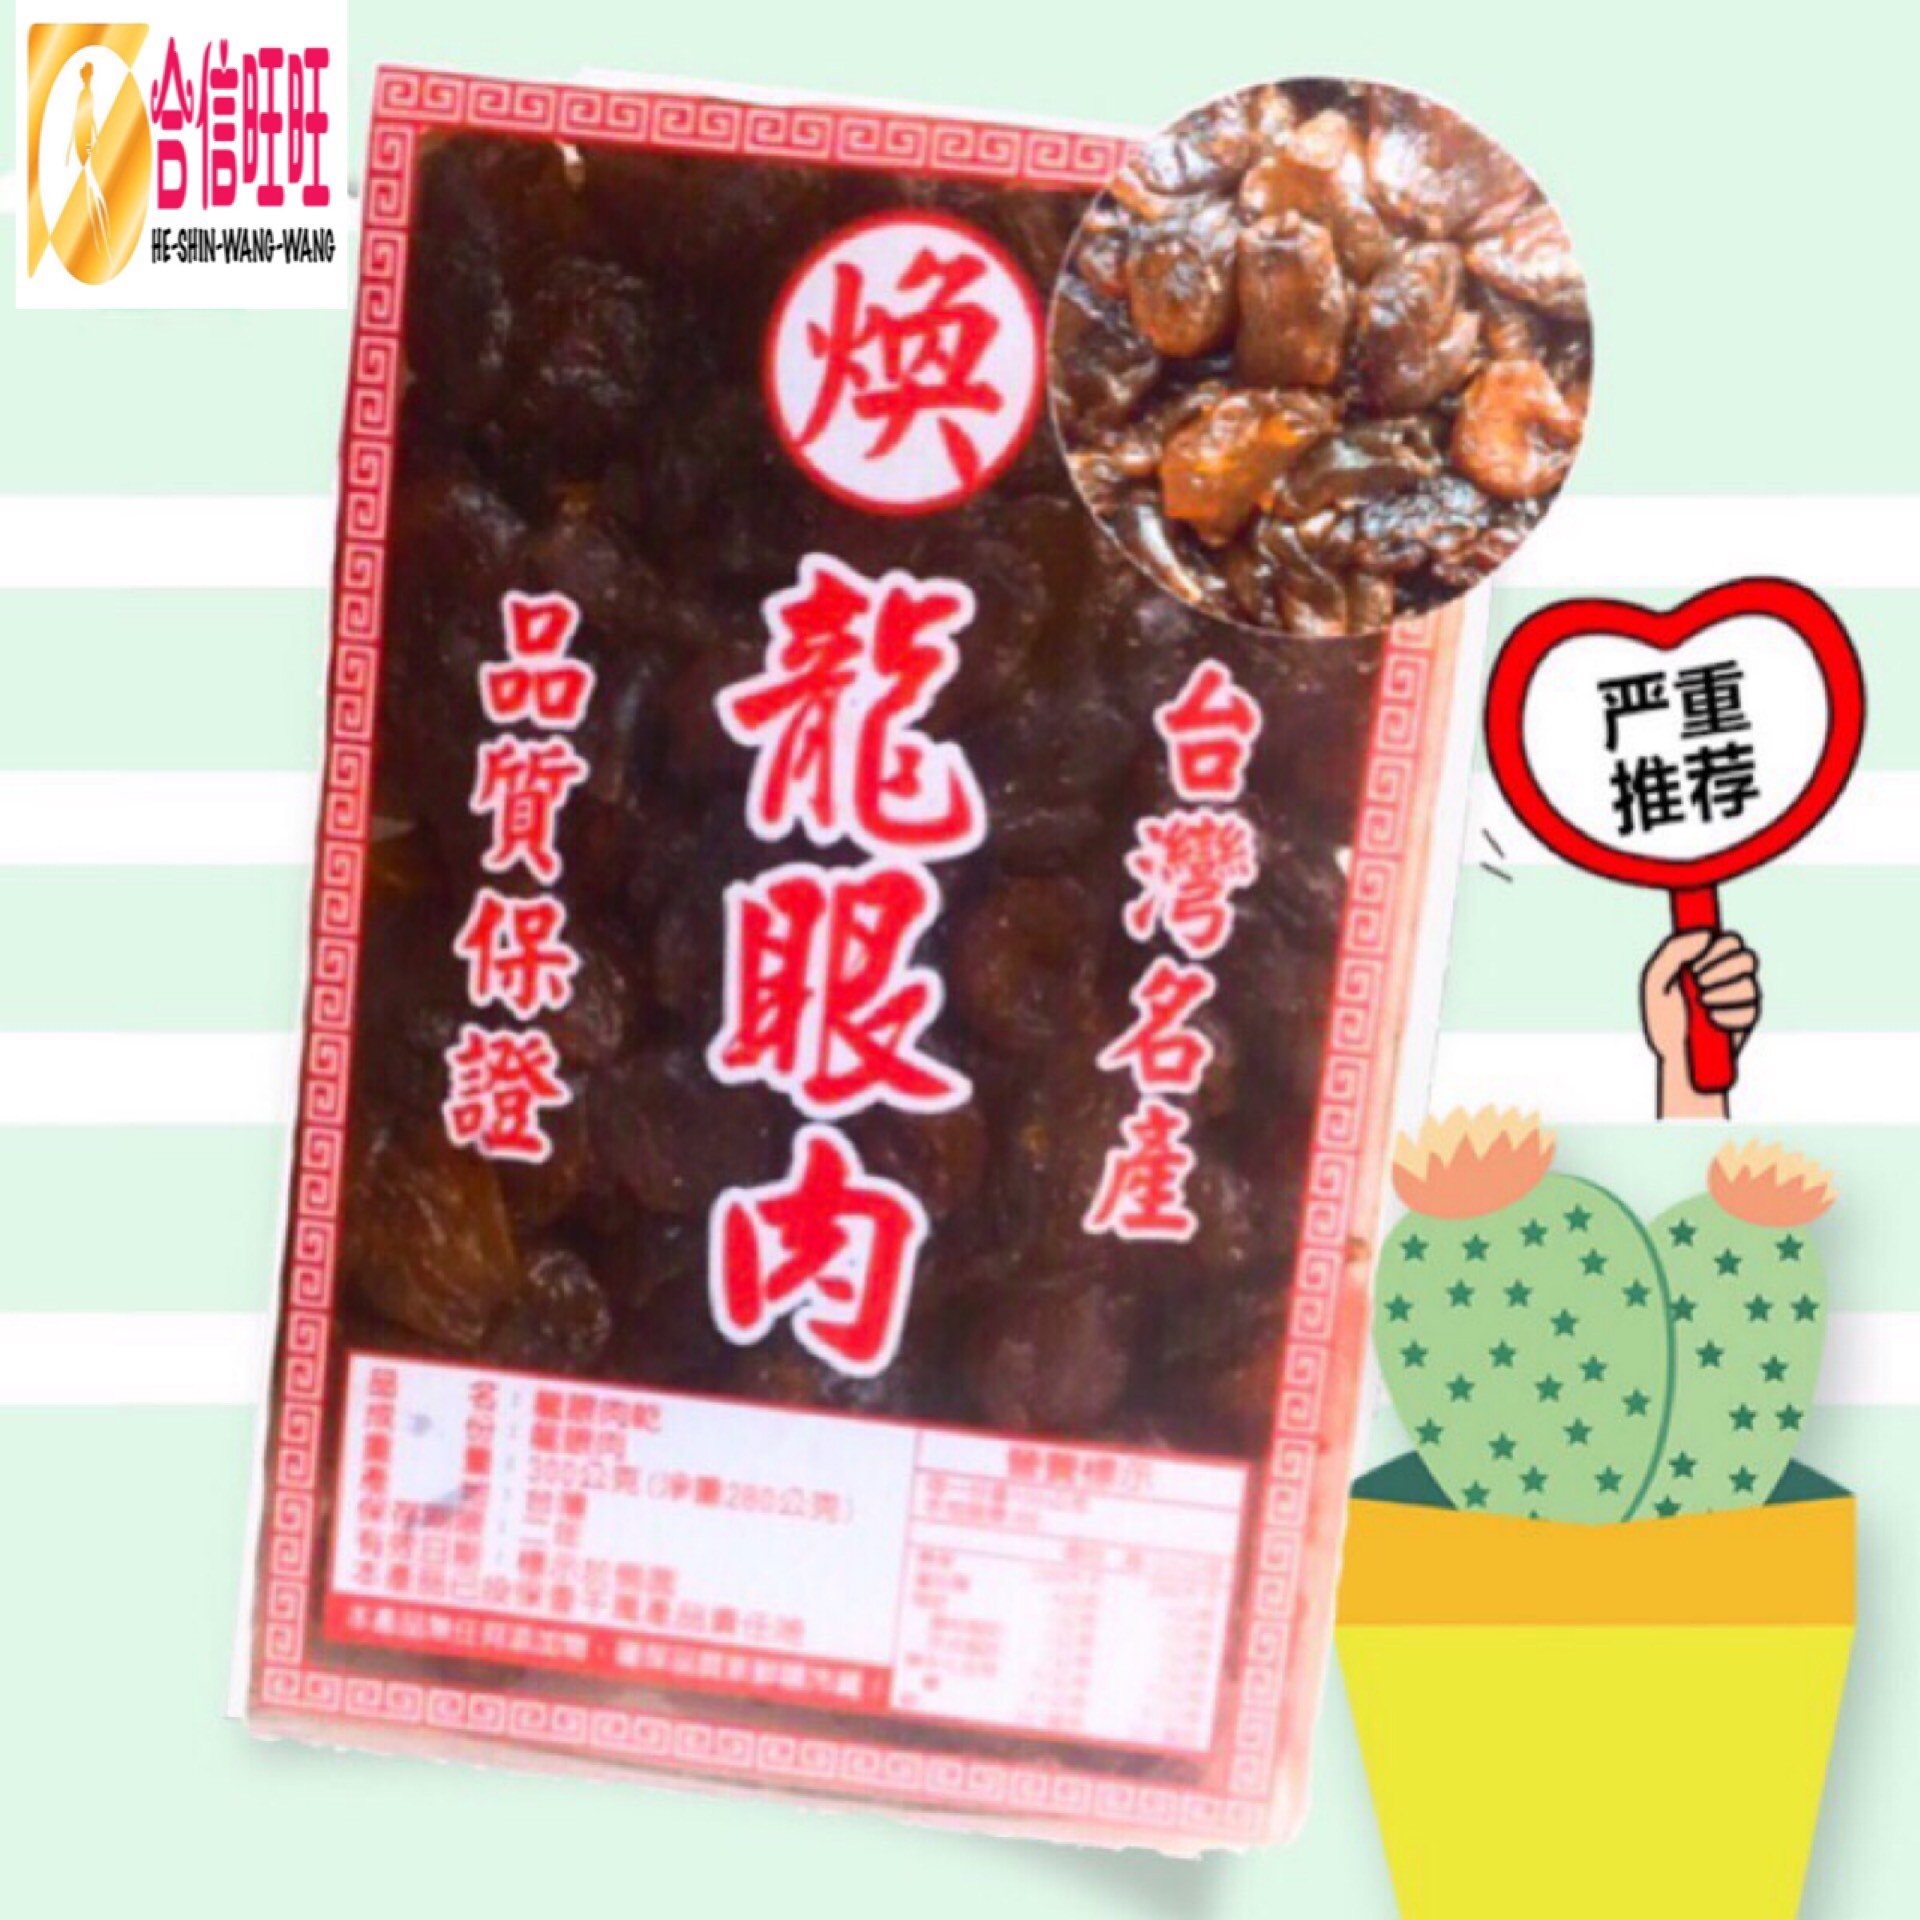 【台灣桂圓肉】300g╱味道香甜 肉質Q彈